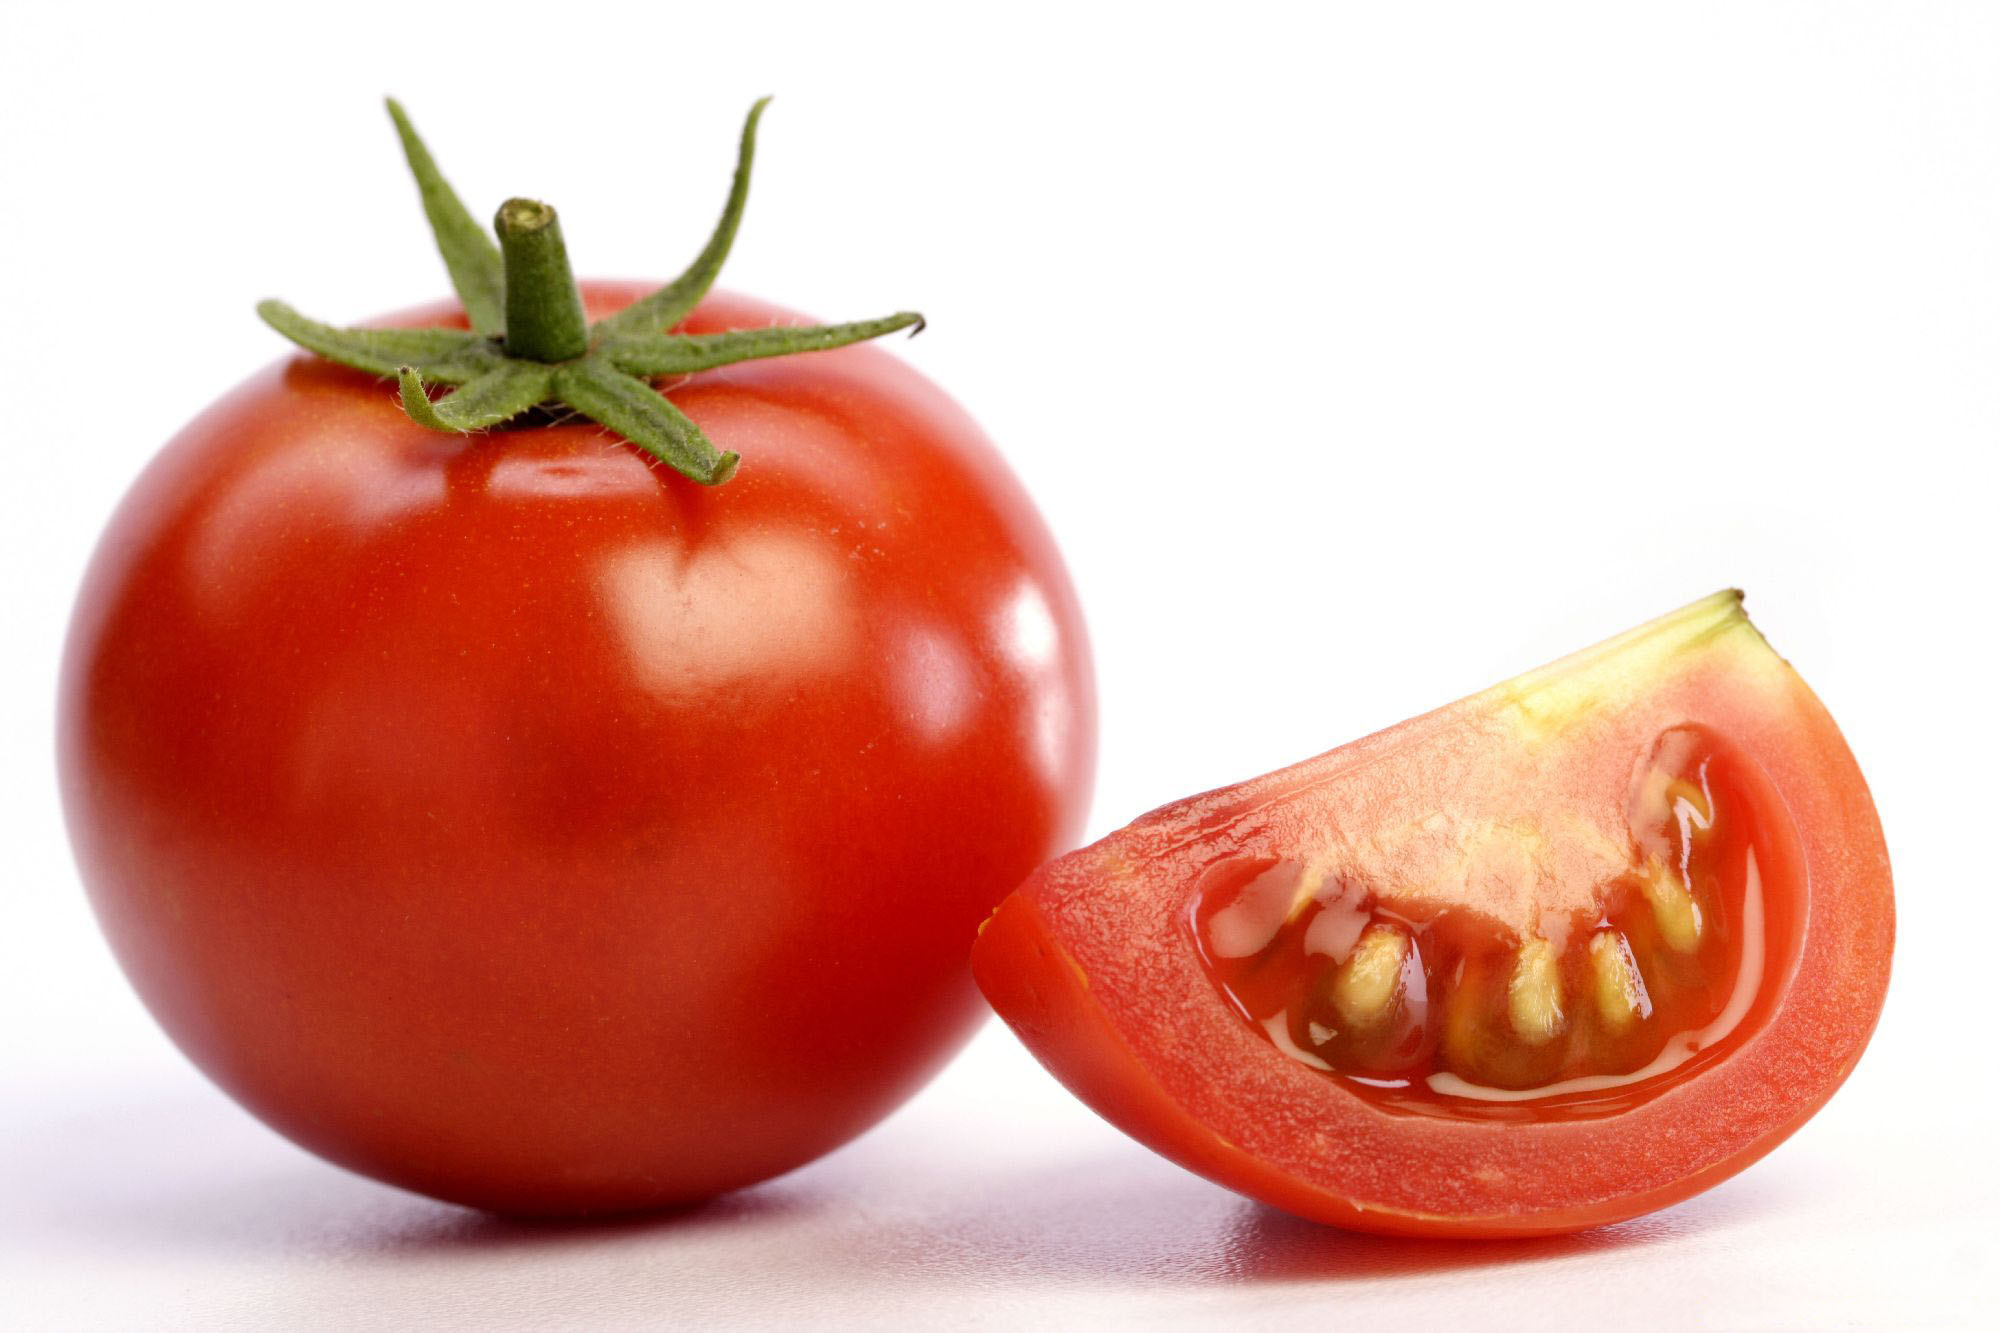 تاثیر گوجه بر پروستات , خواص گوجه فرنگی برای پروستات , نقش گوجه فرنگی در پروستارت 